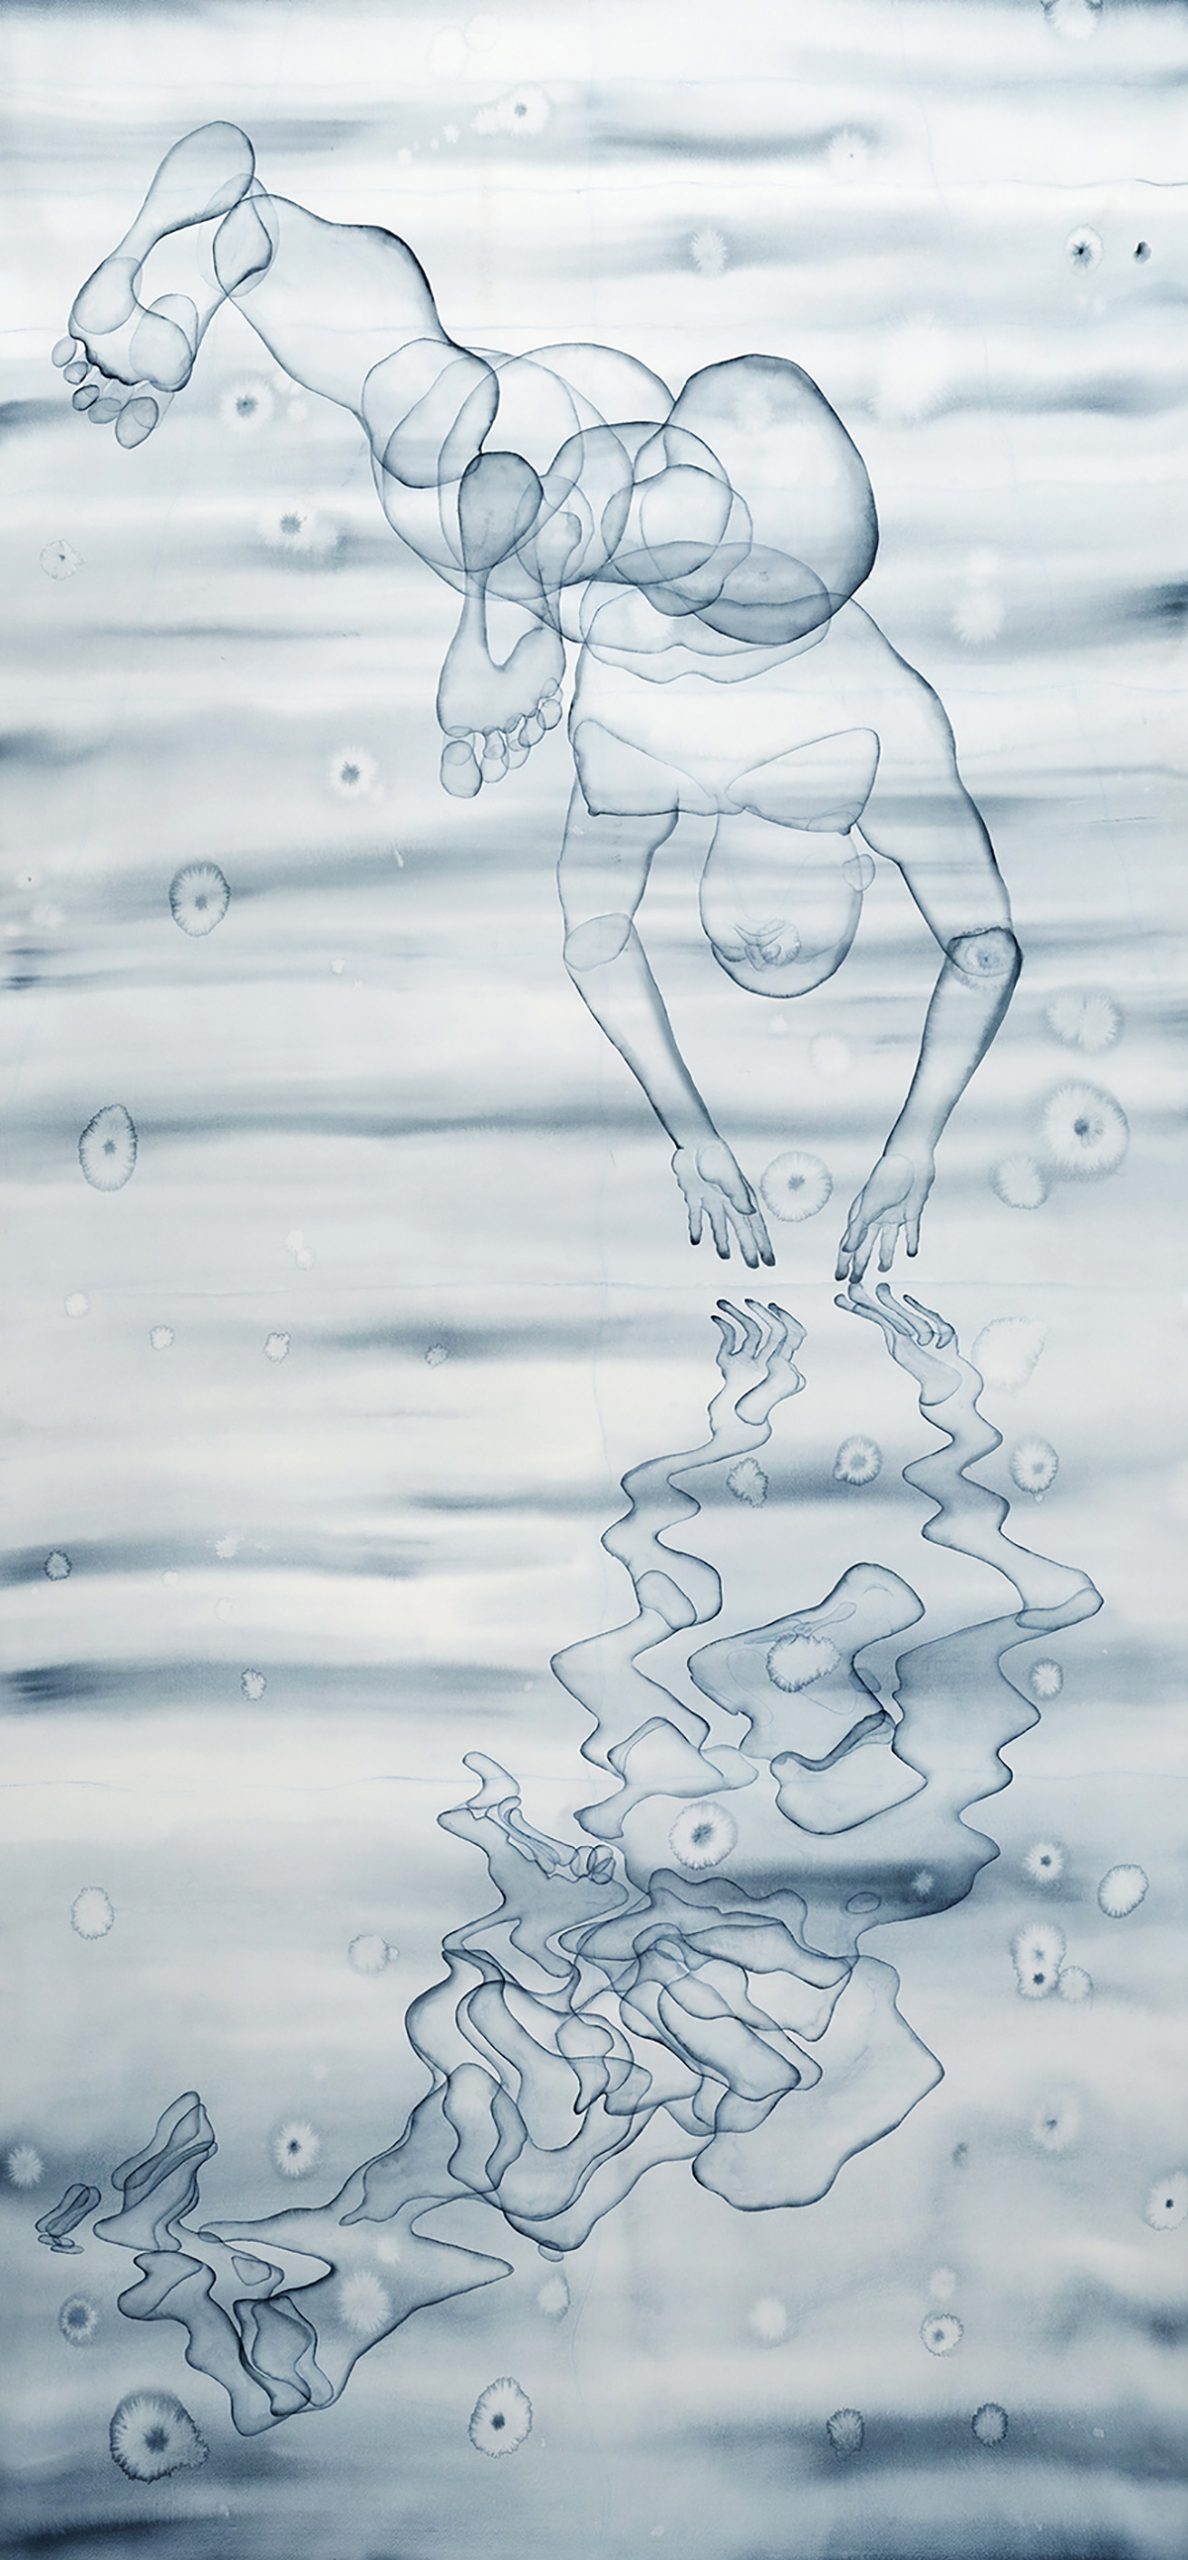 Stefano Bolzano, Riflettendo prima di immergersi, acquerello su carta, 110x237 cm, 2020.